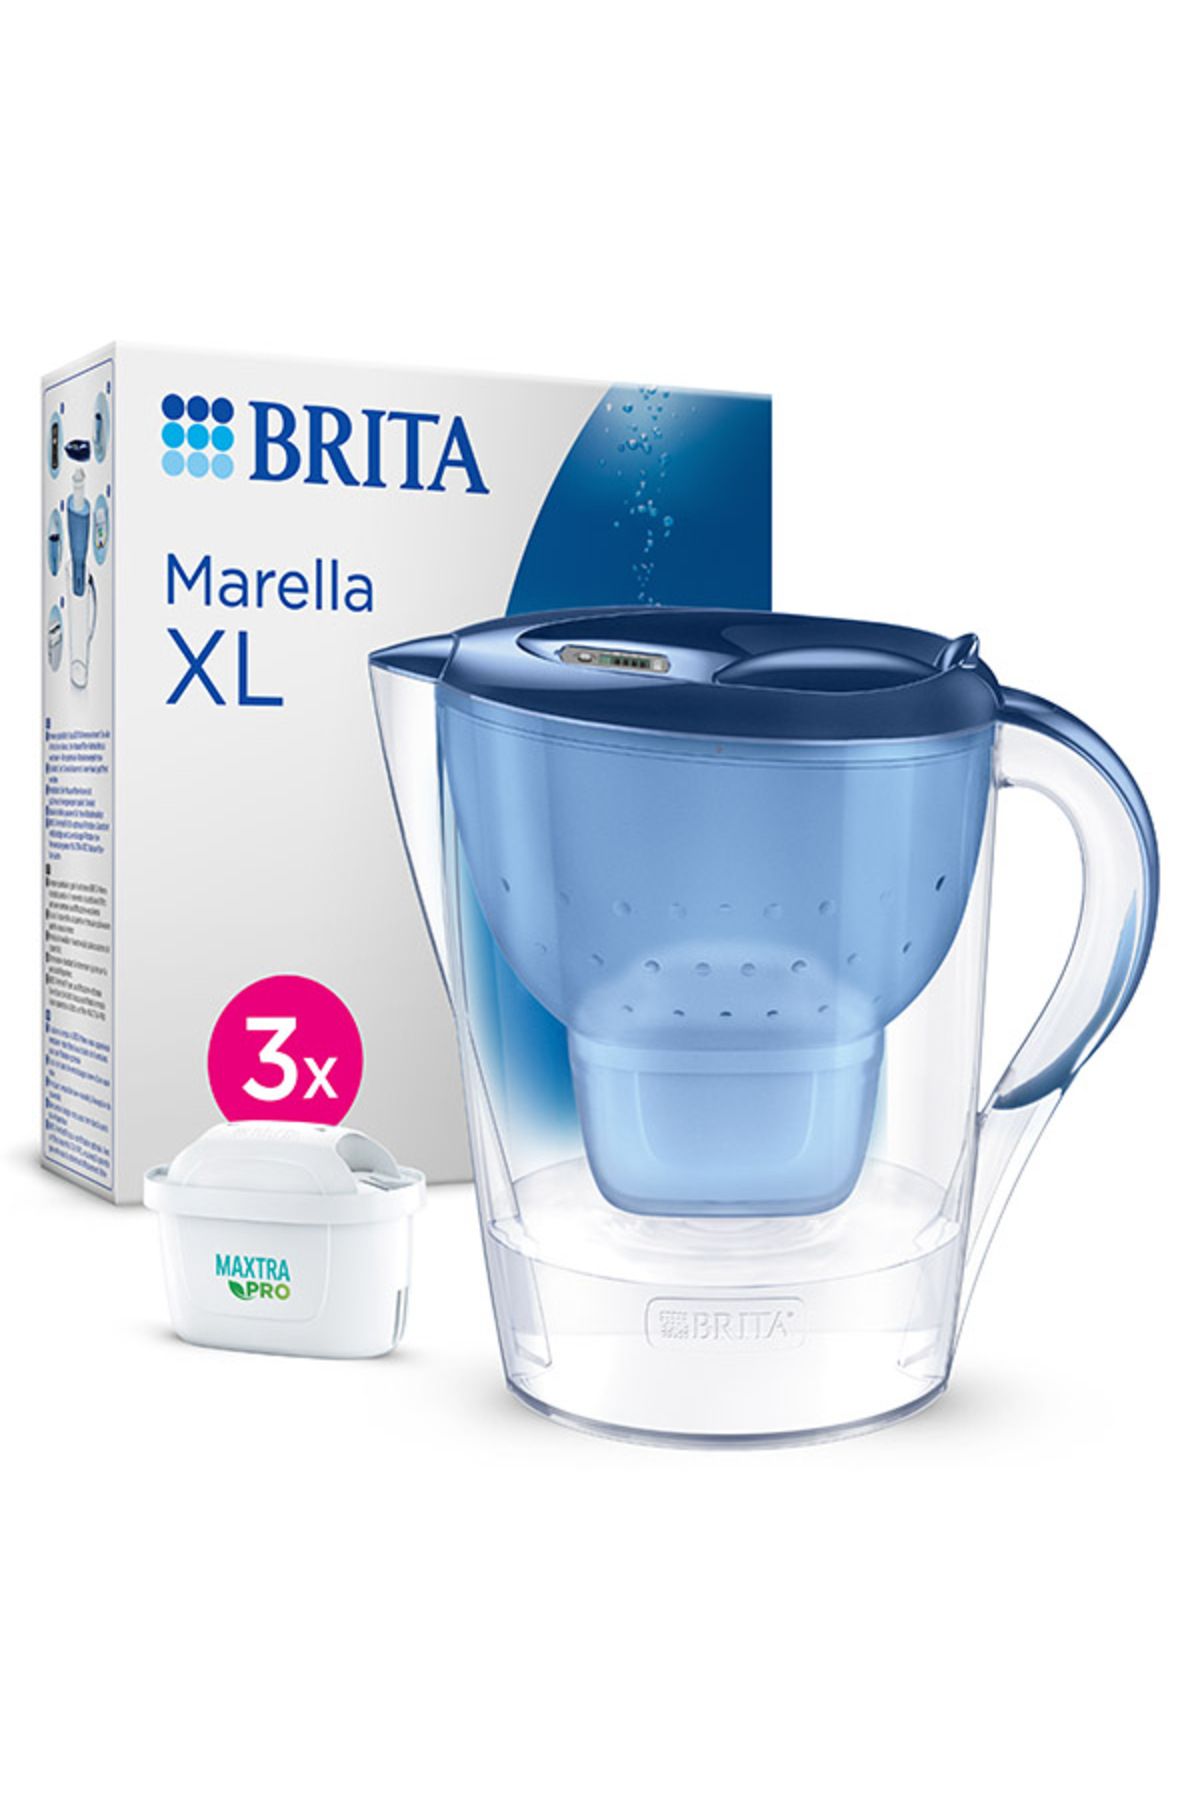 Brita Marella Xl ''3x Maxtra Pro All-ın-1 Filtreli'' Su Arıtma Sürahisi – Mavi (3,5 L)